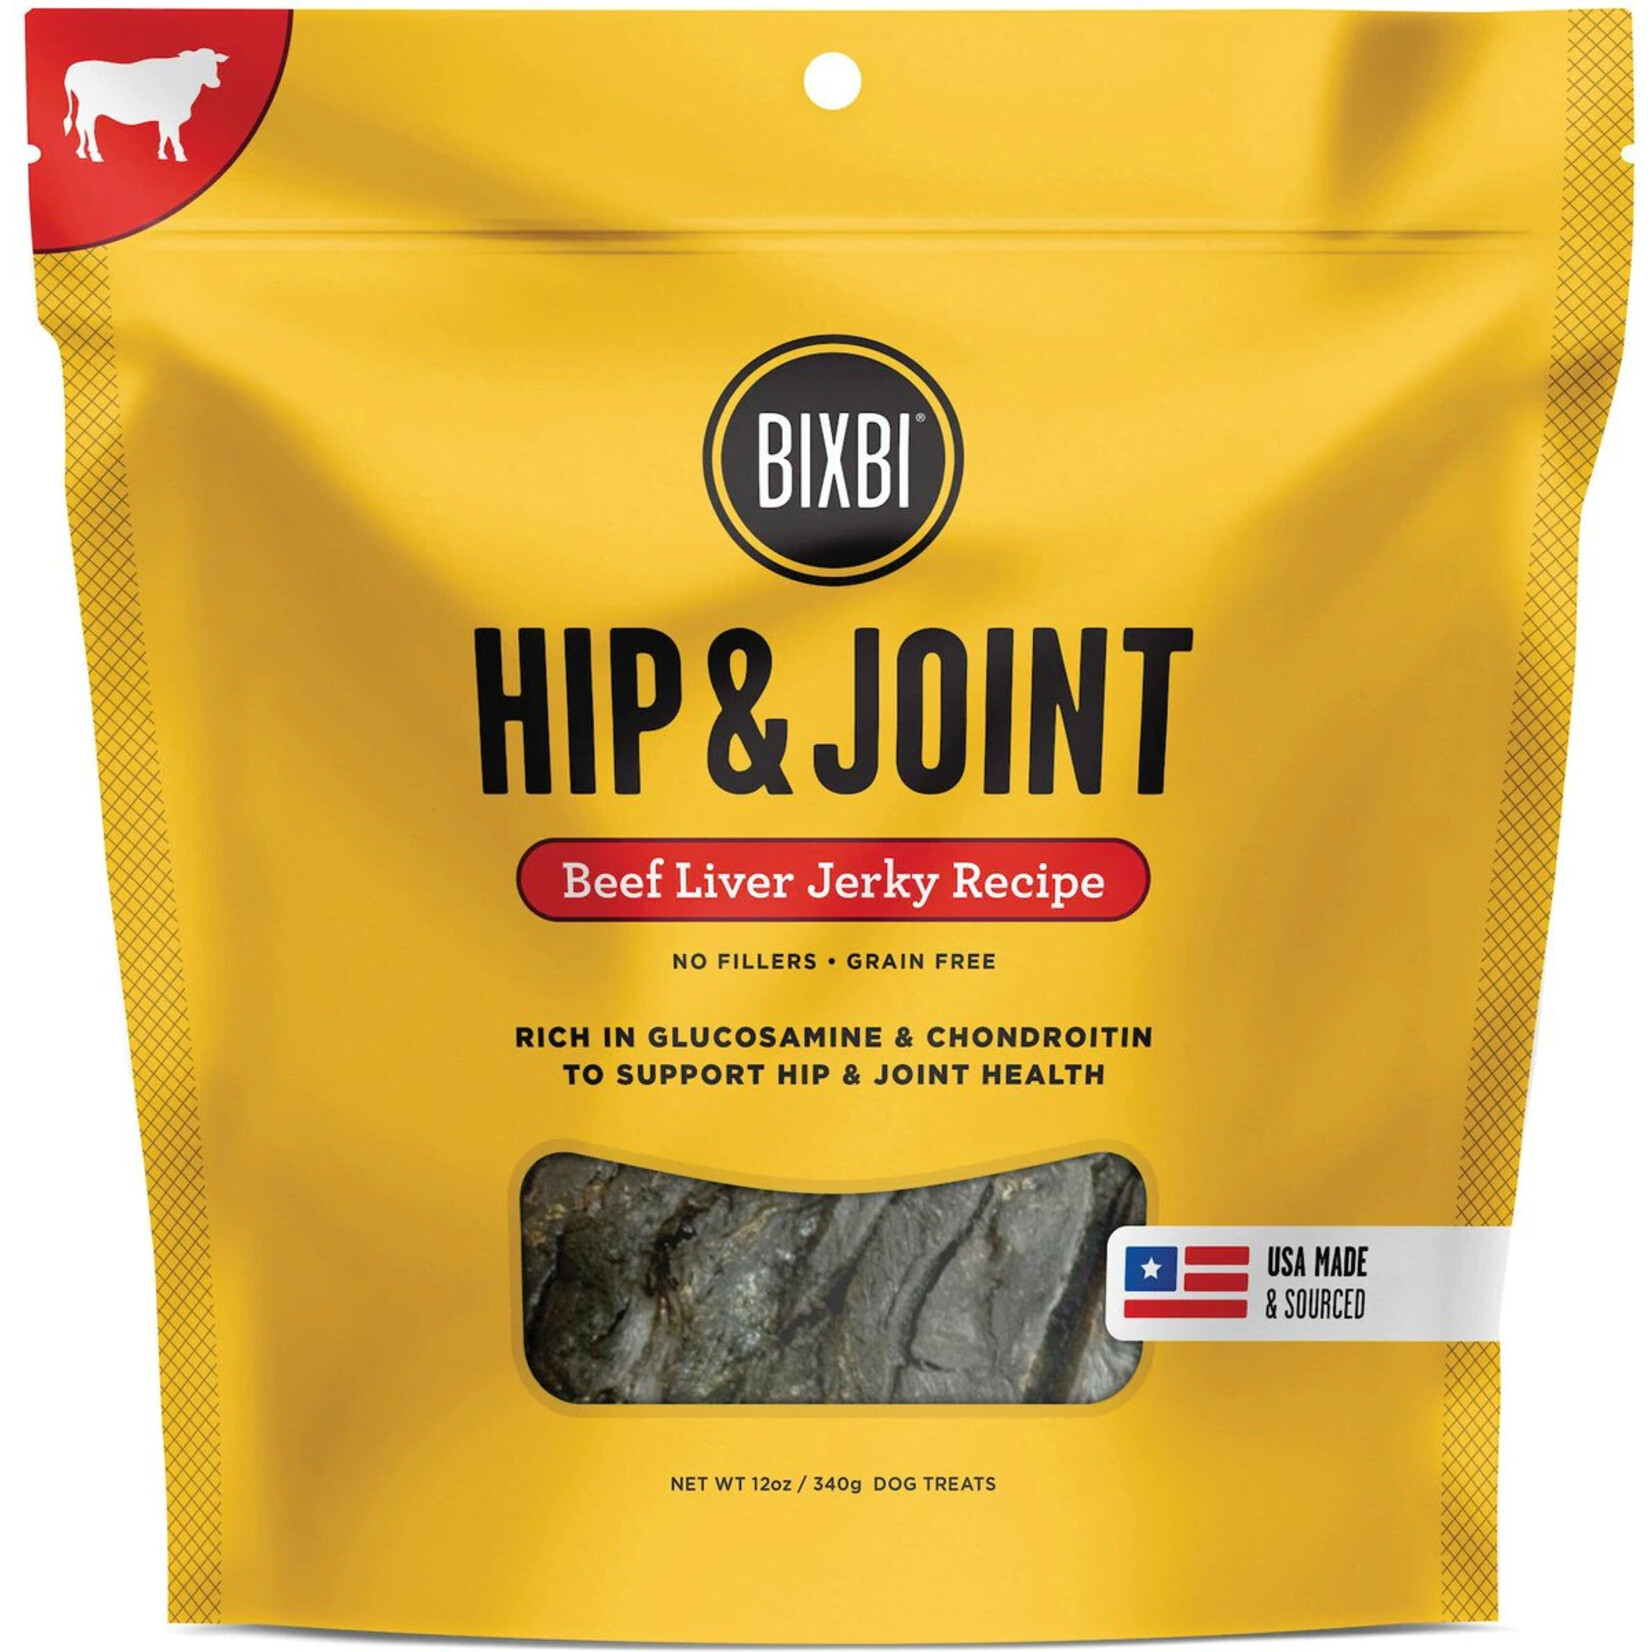 Bixbi Bixbi Hip & Joint - Beef Liver Jerky Recipe